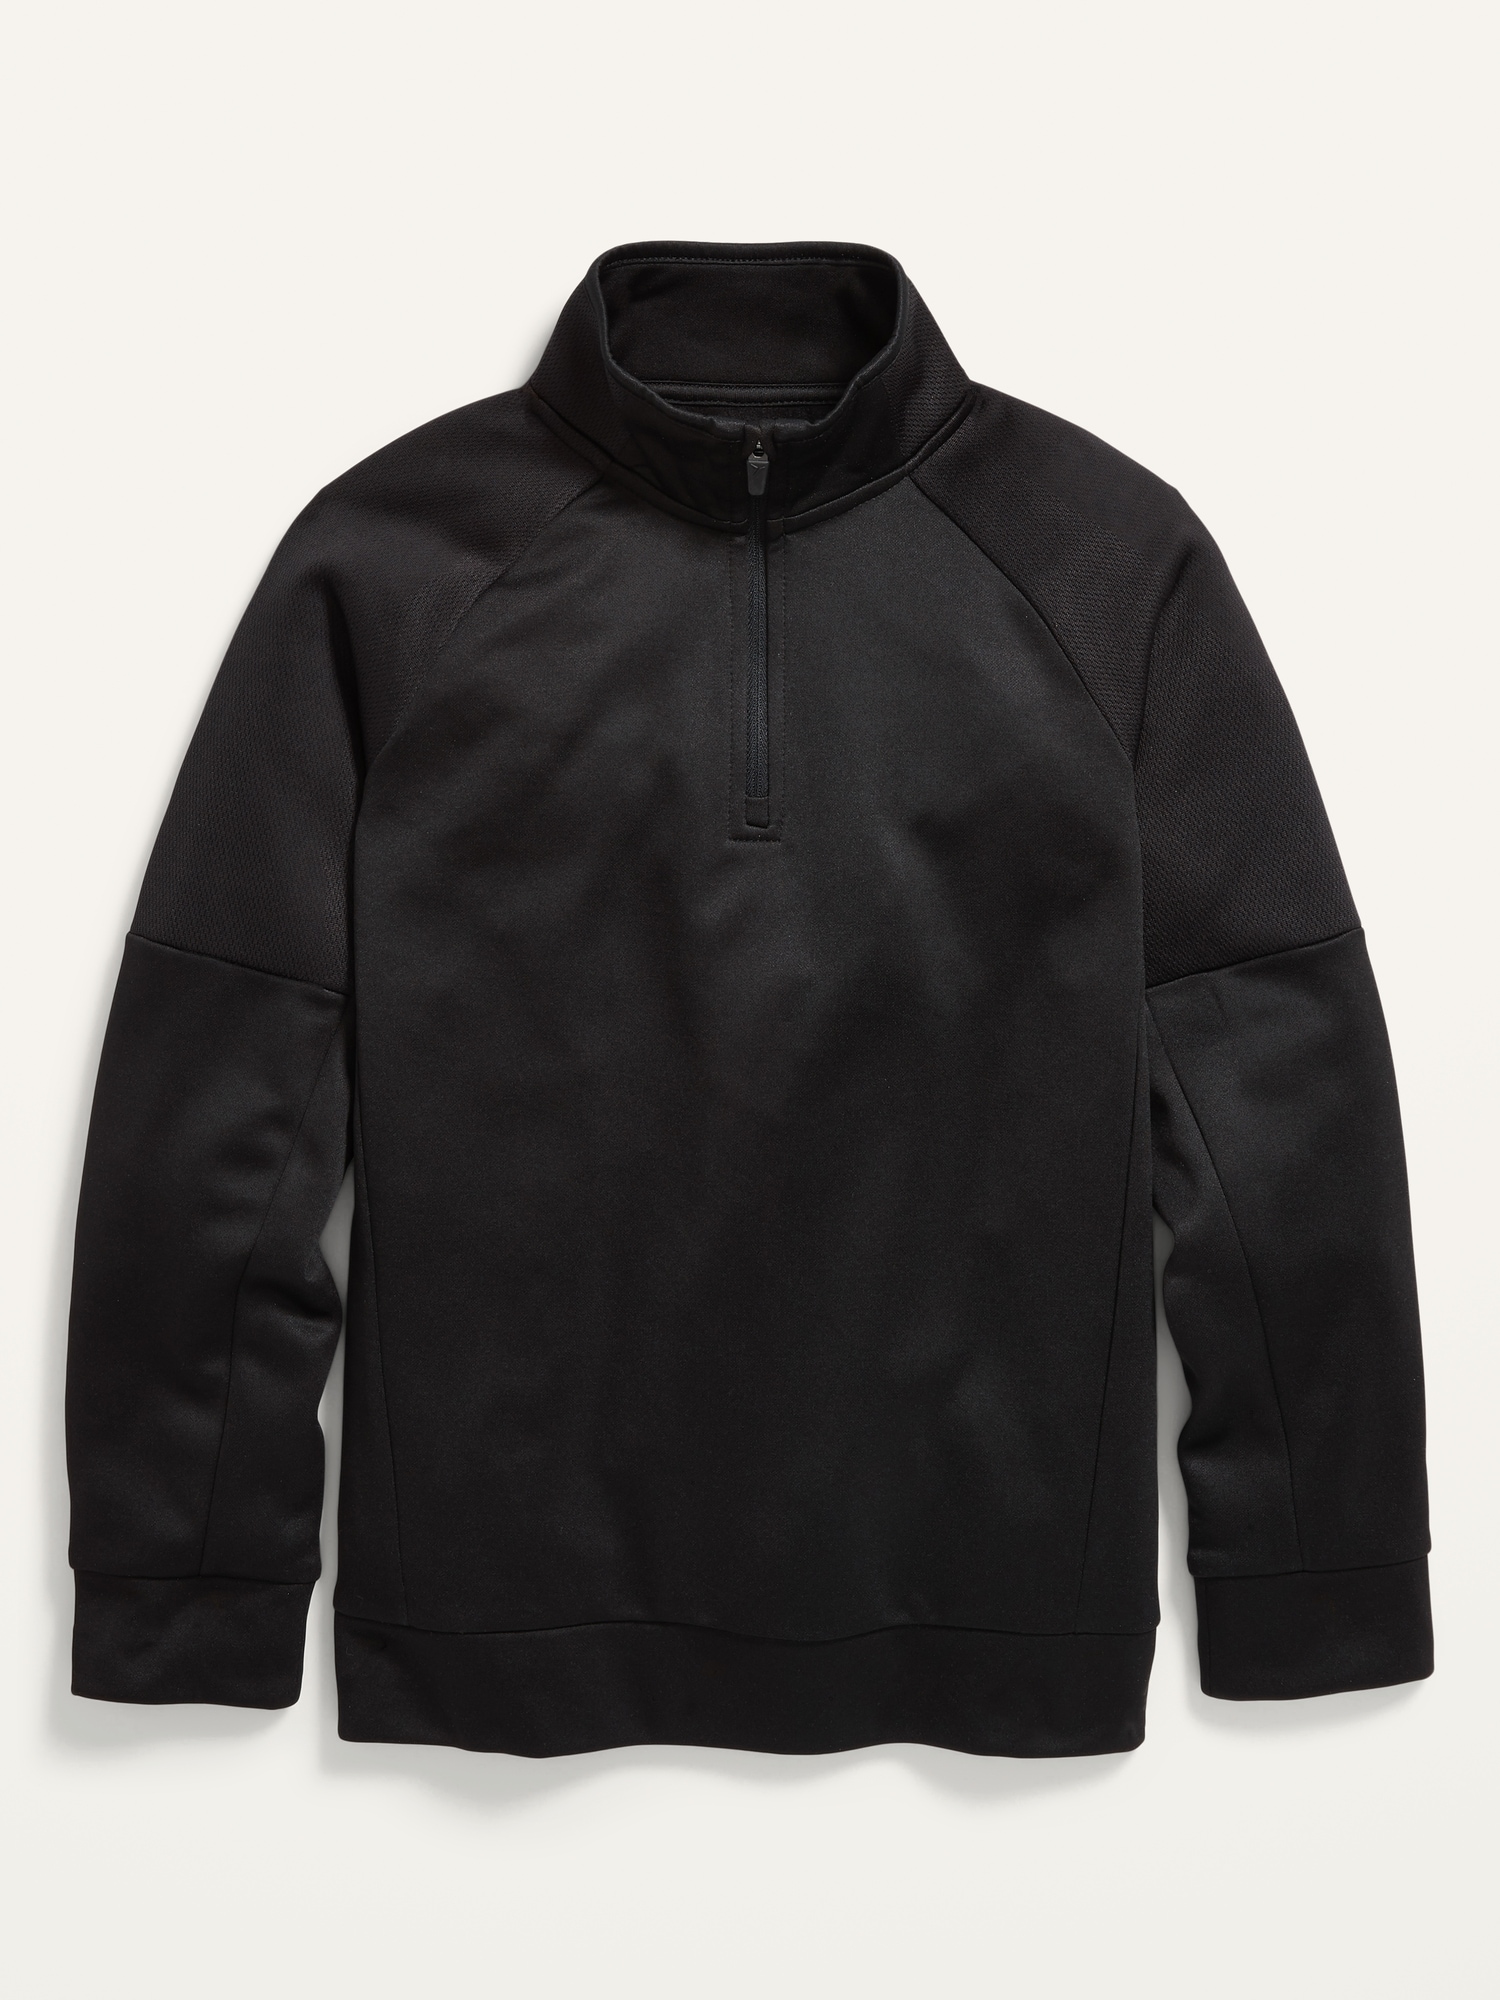 Techie Fleece Quarter-Zip Sweatshirt For Boys | Old Navy